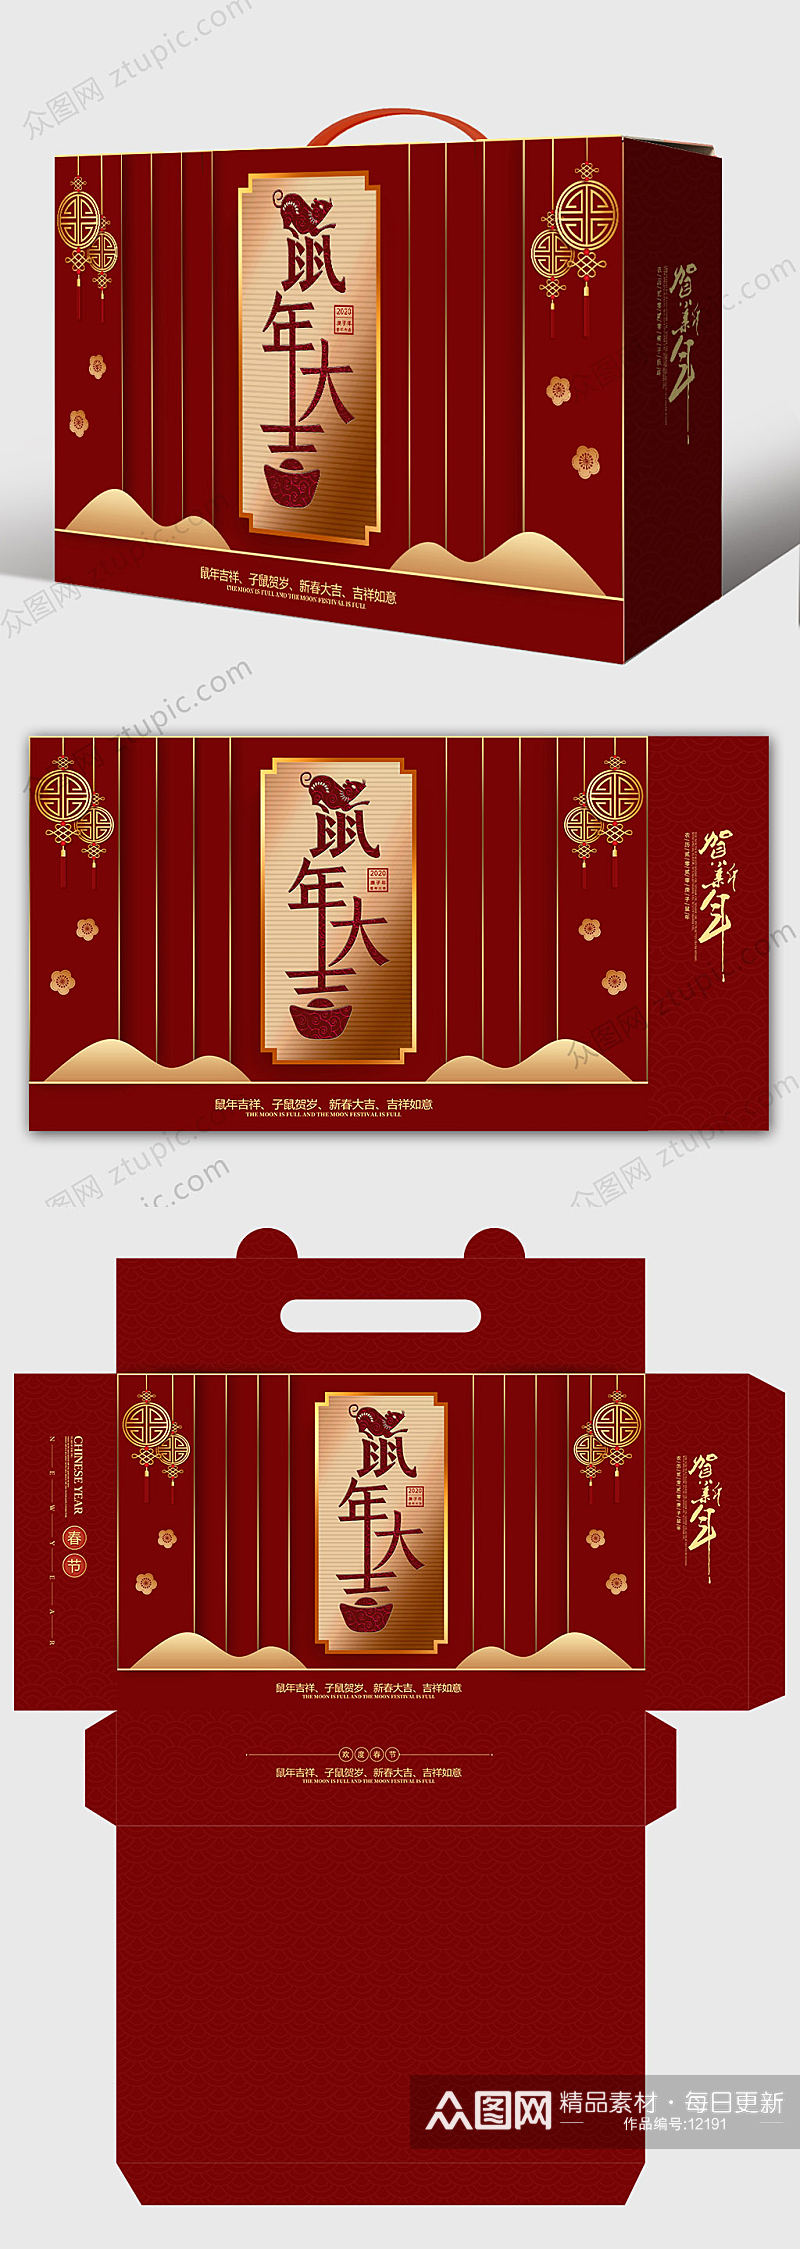 红色鼠年大吉礼盒设计素材